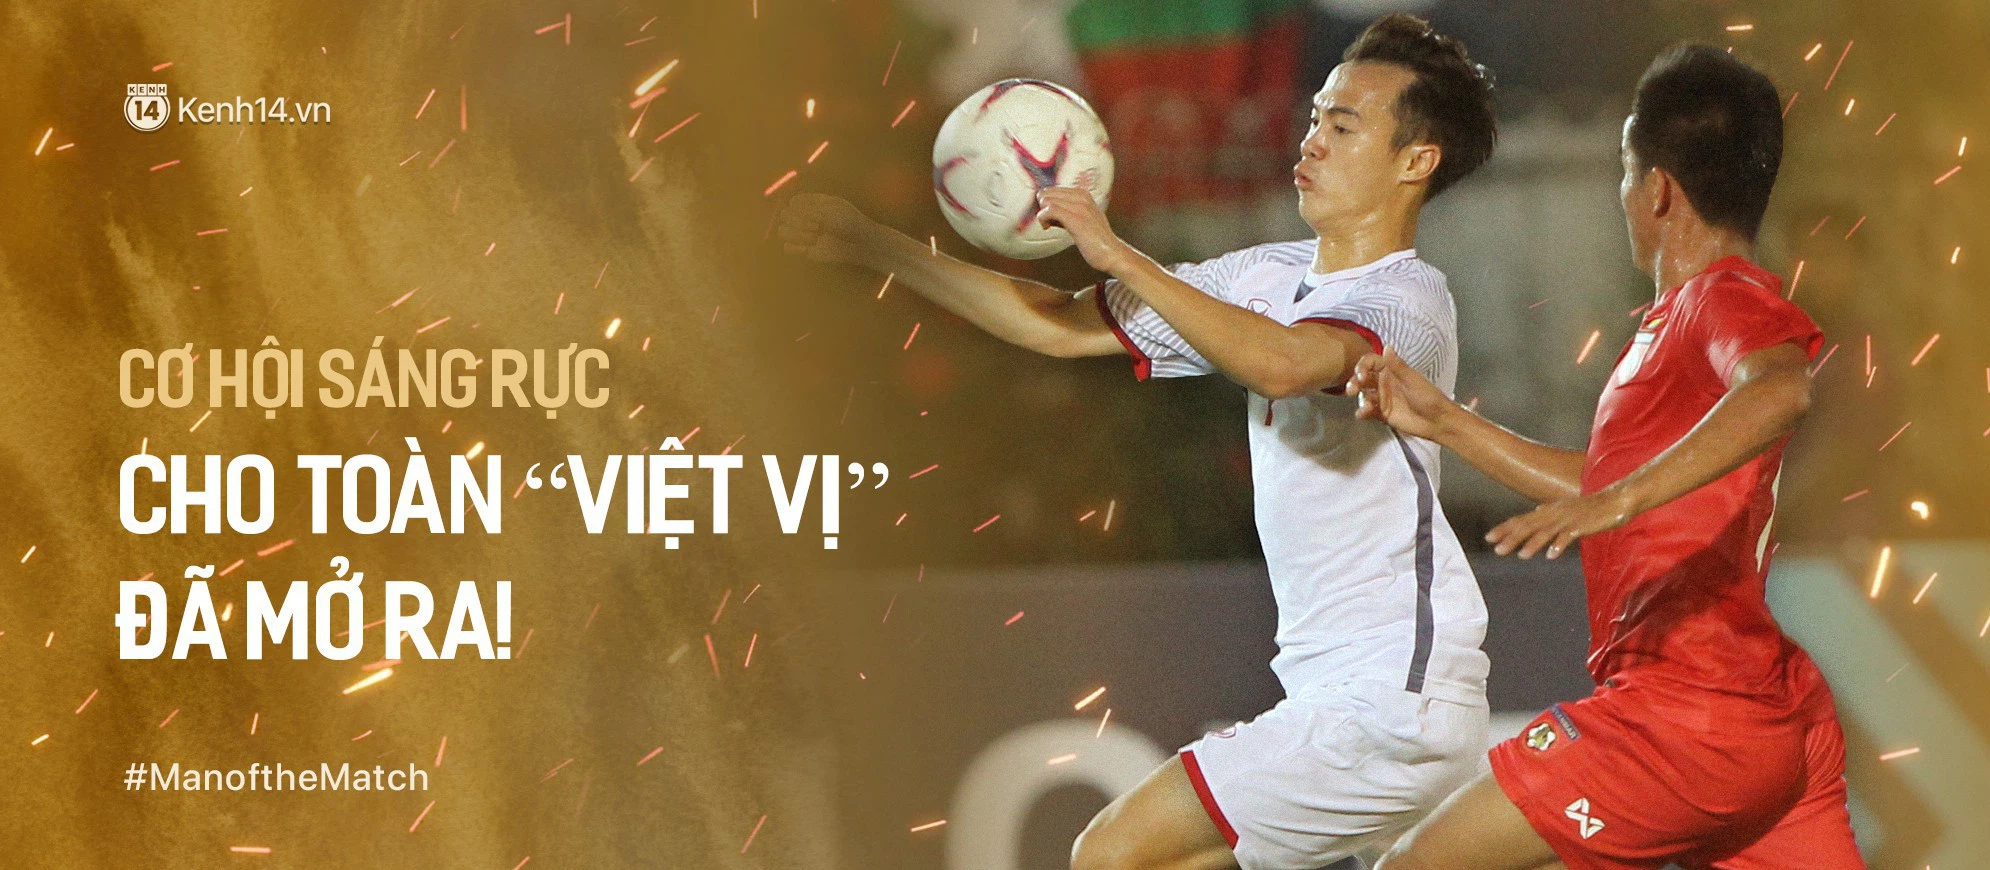 Chốt chặn cuối cùng của đội tuyển Việt Nam: UAE quá mạnh! - Ảnh 8.